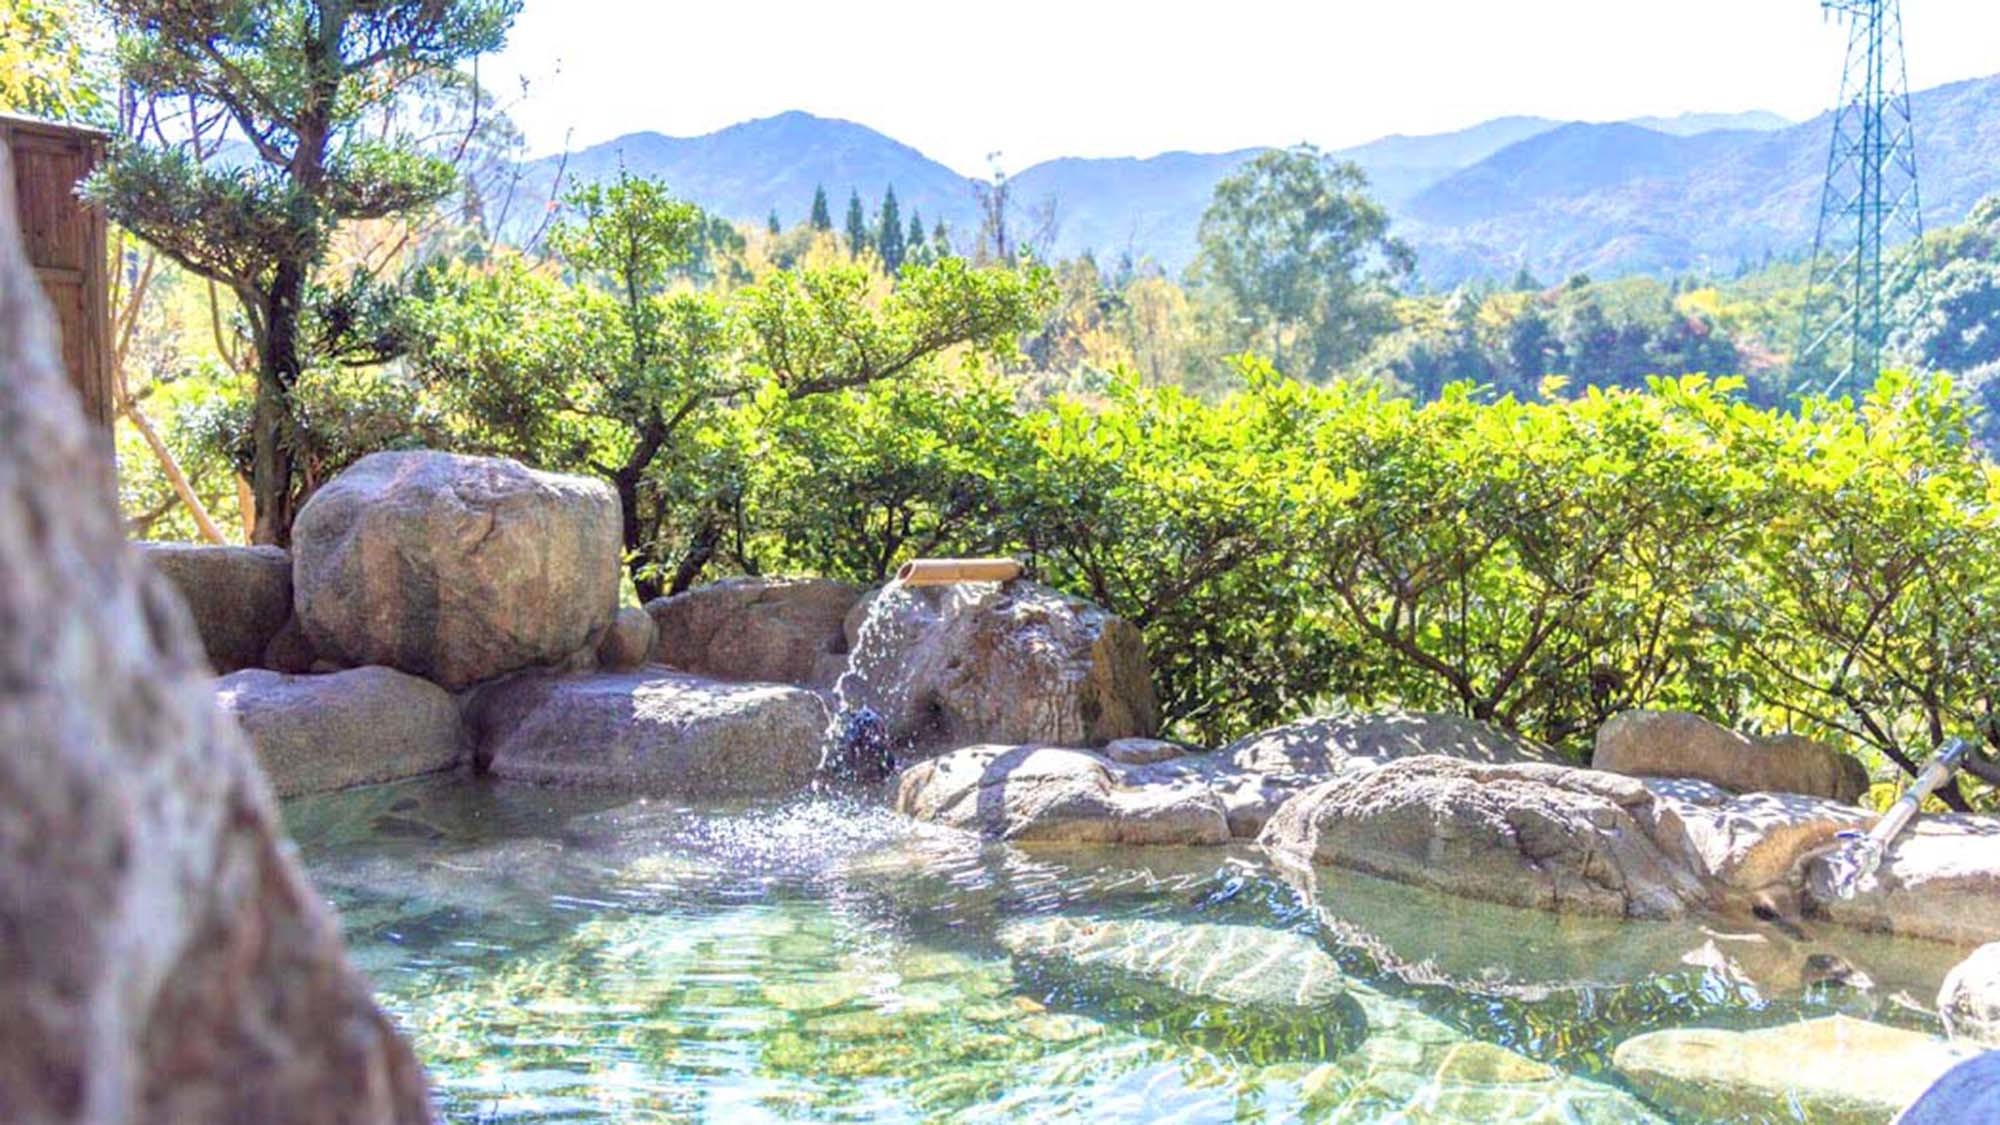 【素泊まり】佐賀の山峡のいで湯「熊の川温泉」でやすらぎのひと時をどうぞ